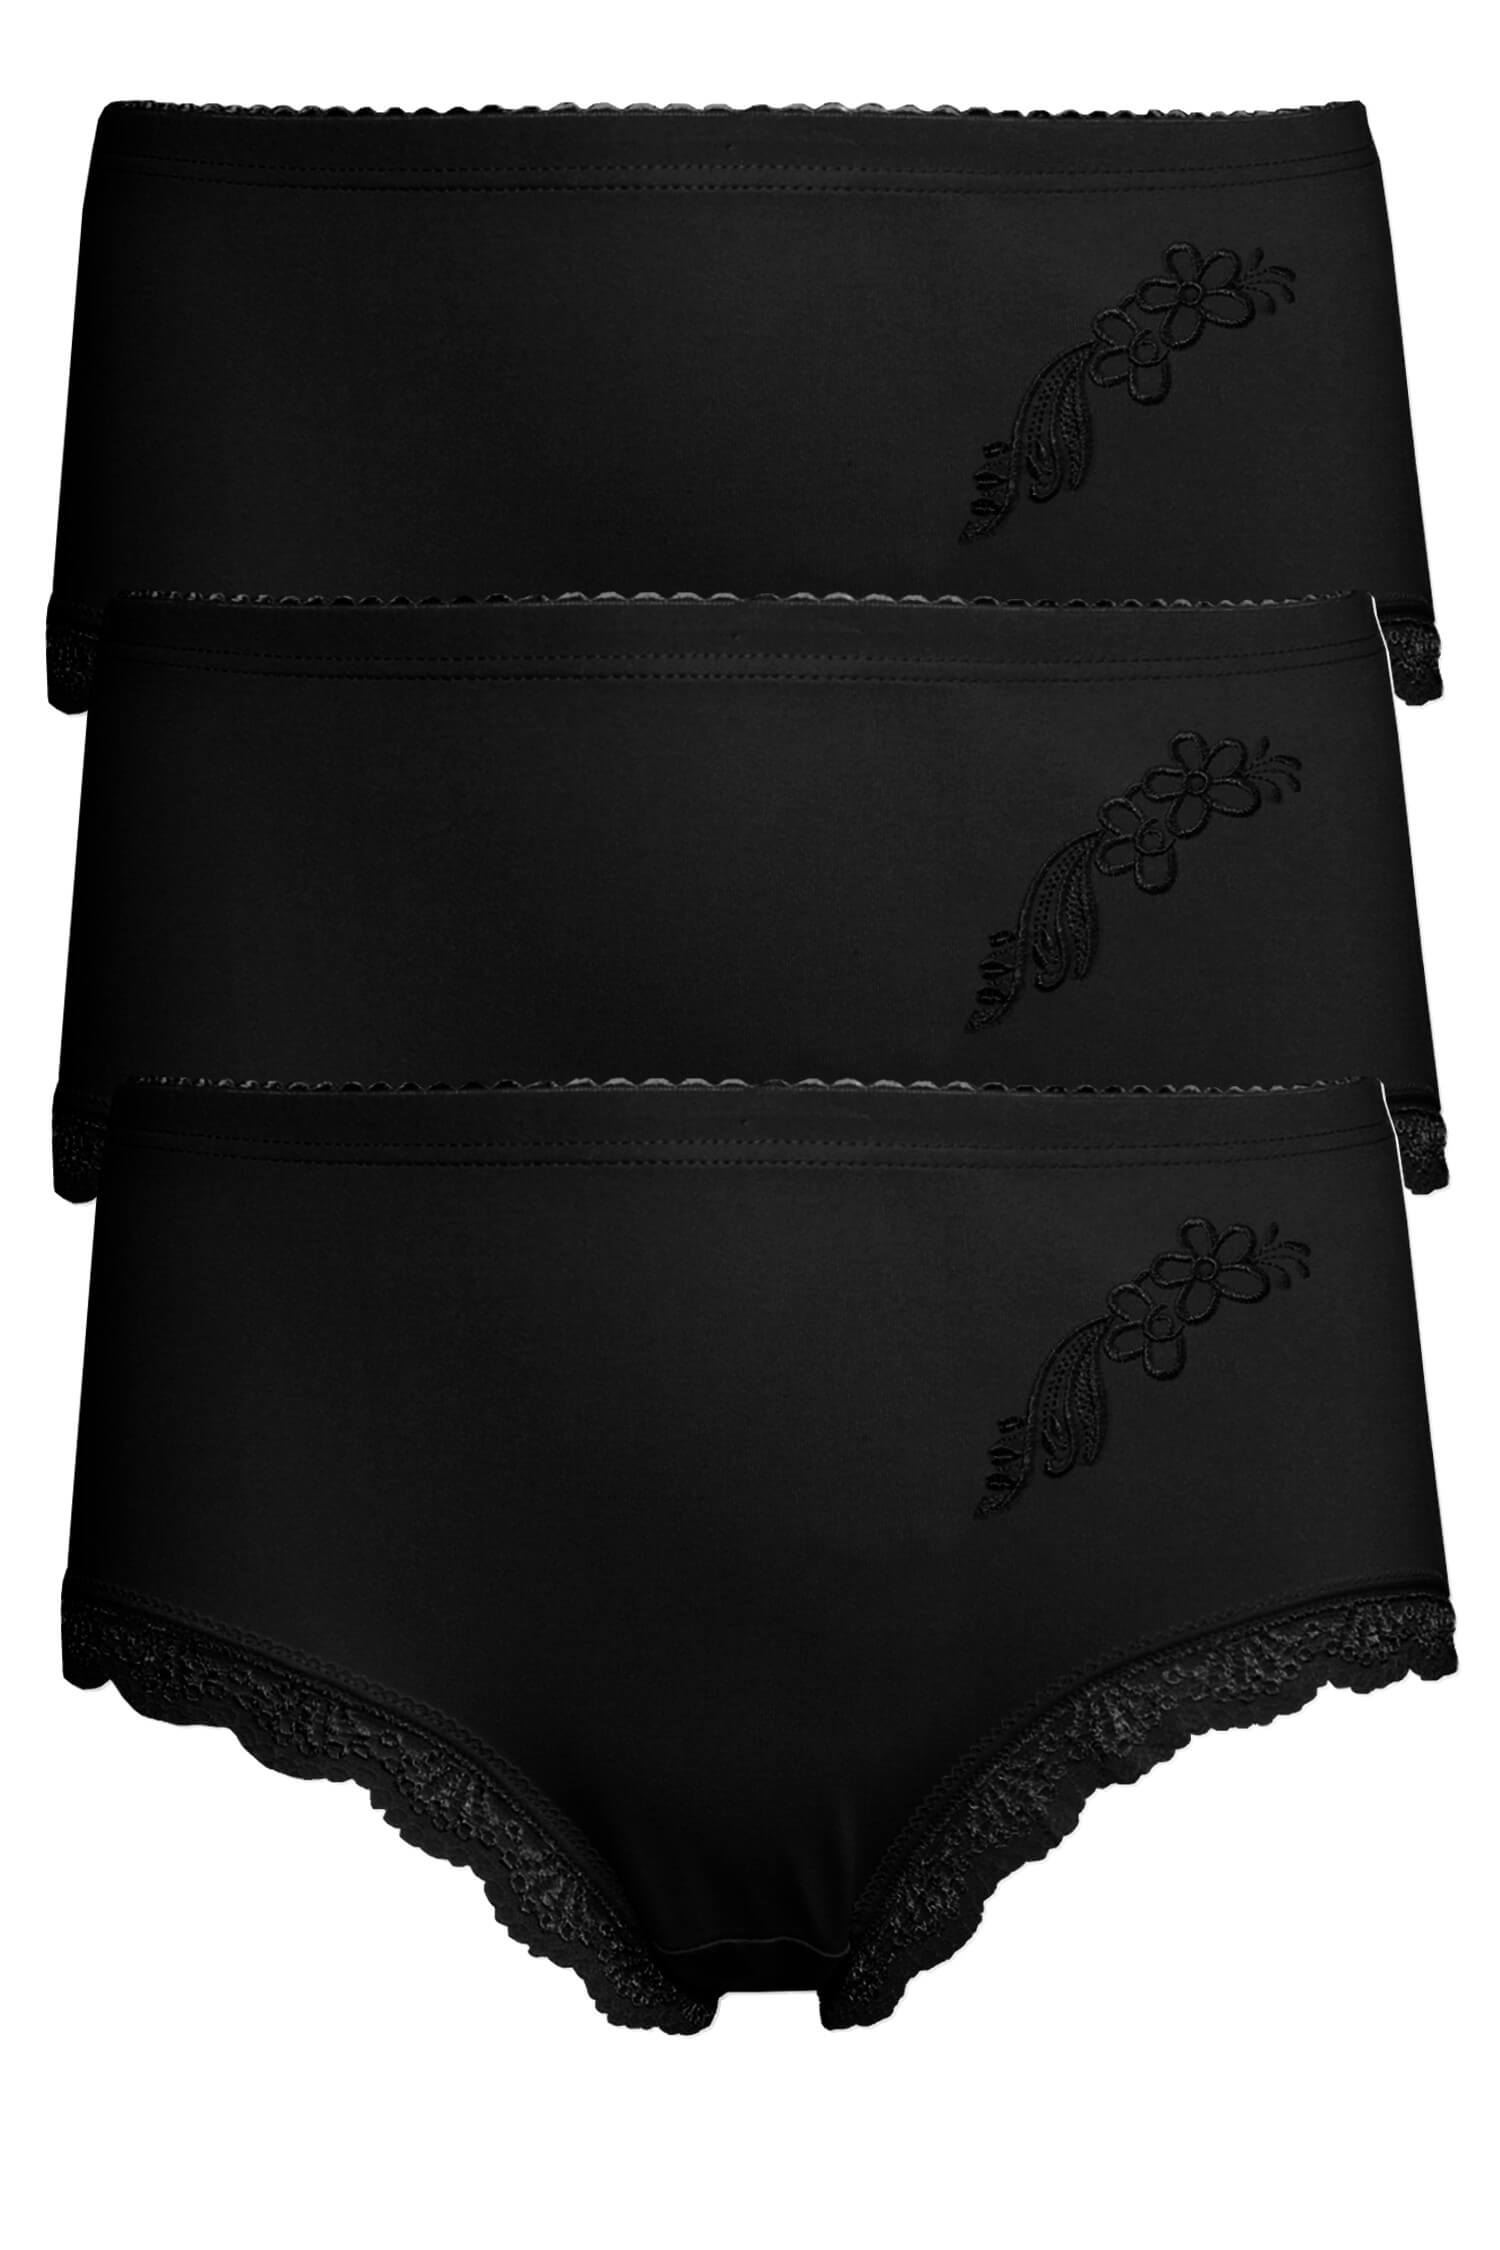 Danča bavlněné kalhotky s krajkou 9009 - 3bal černá XL